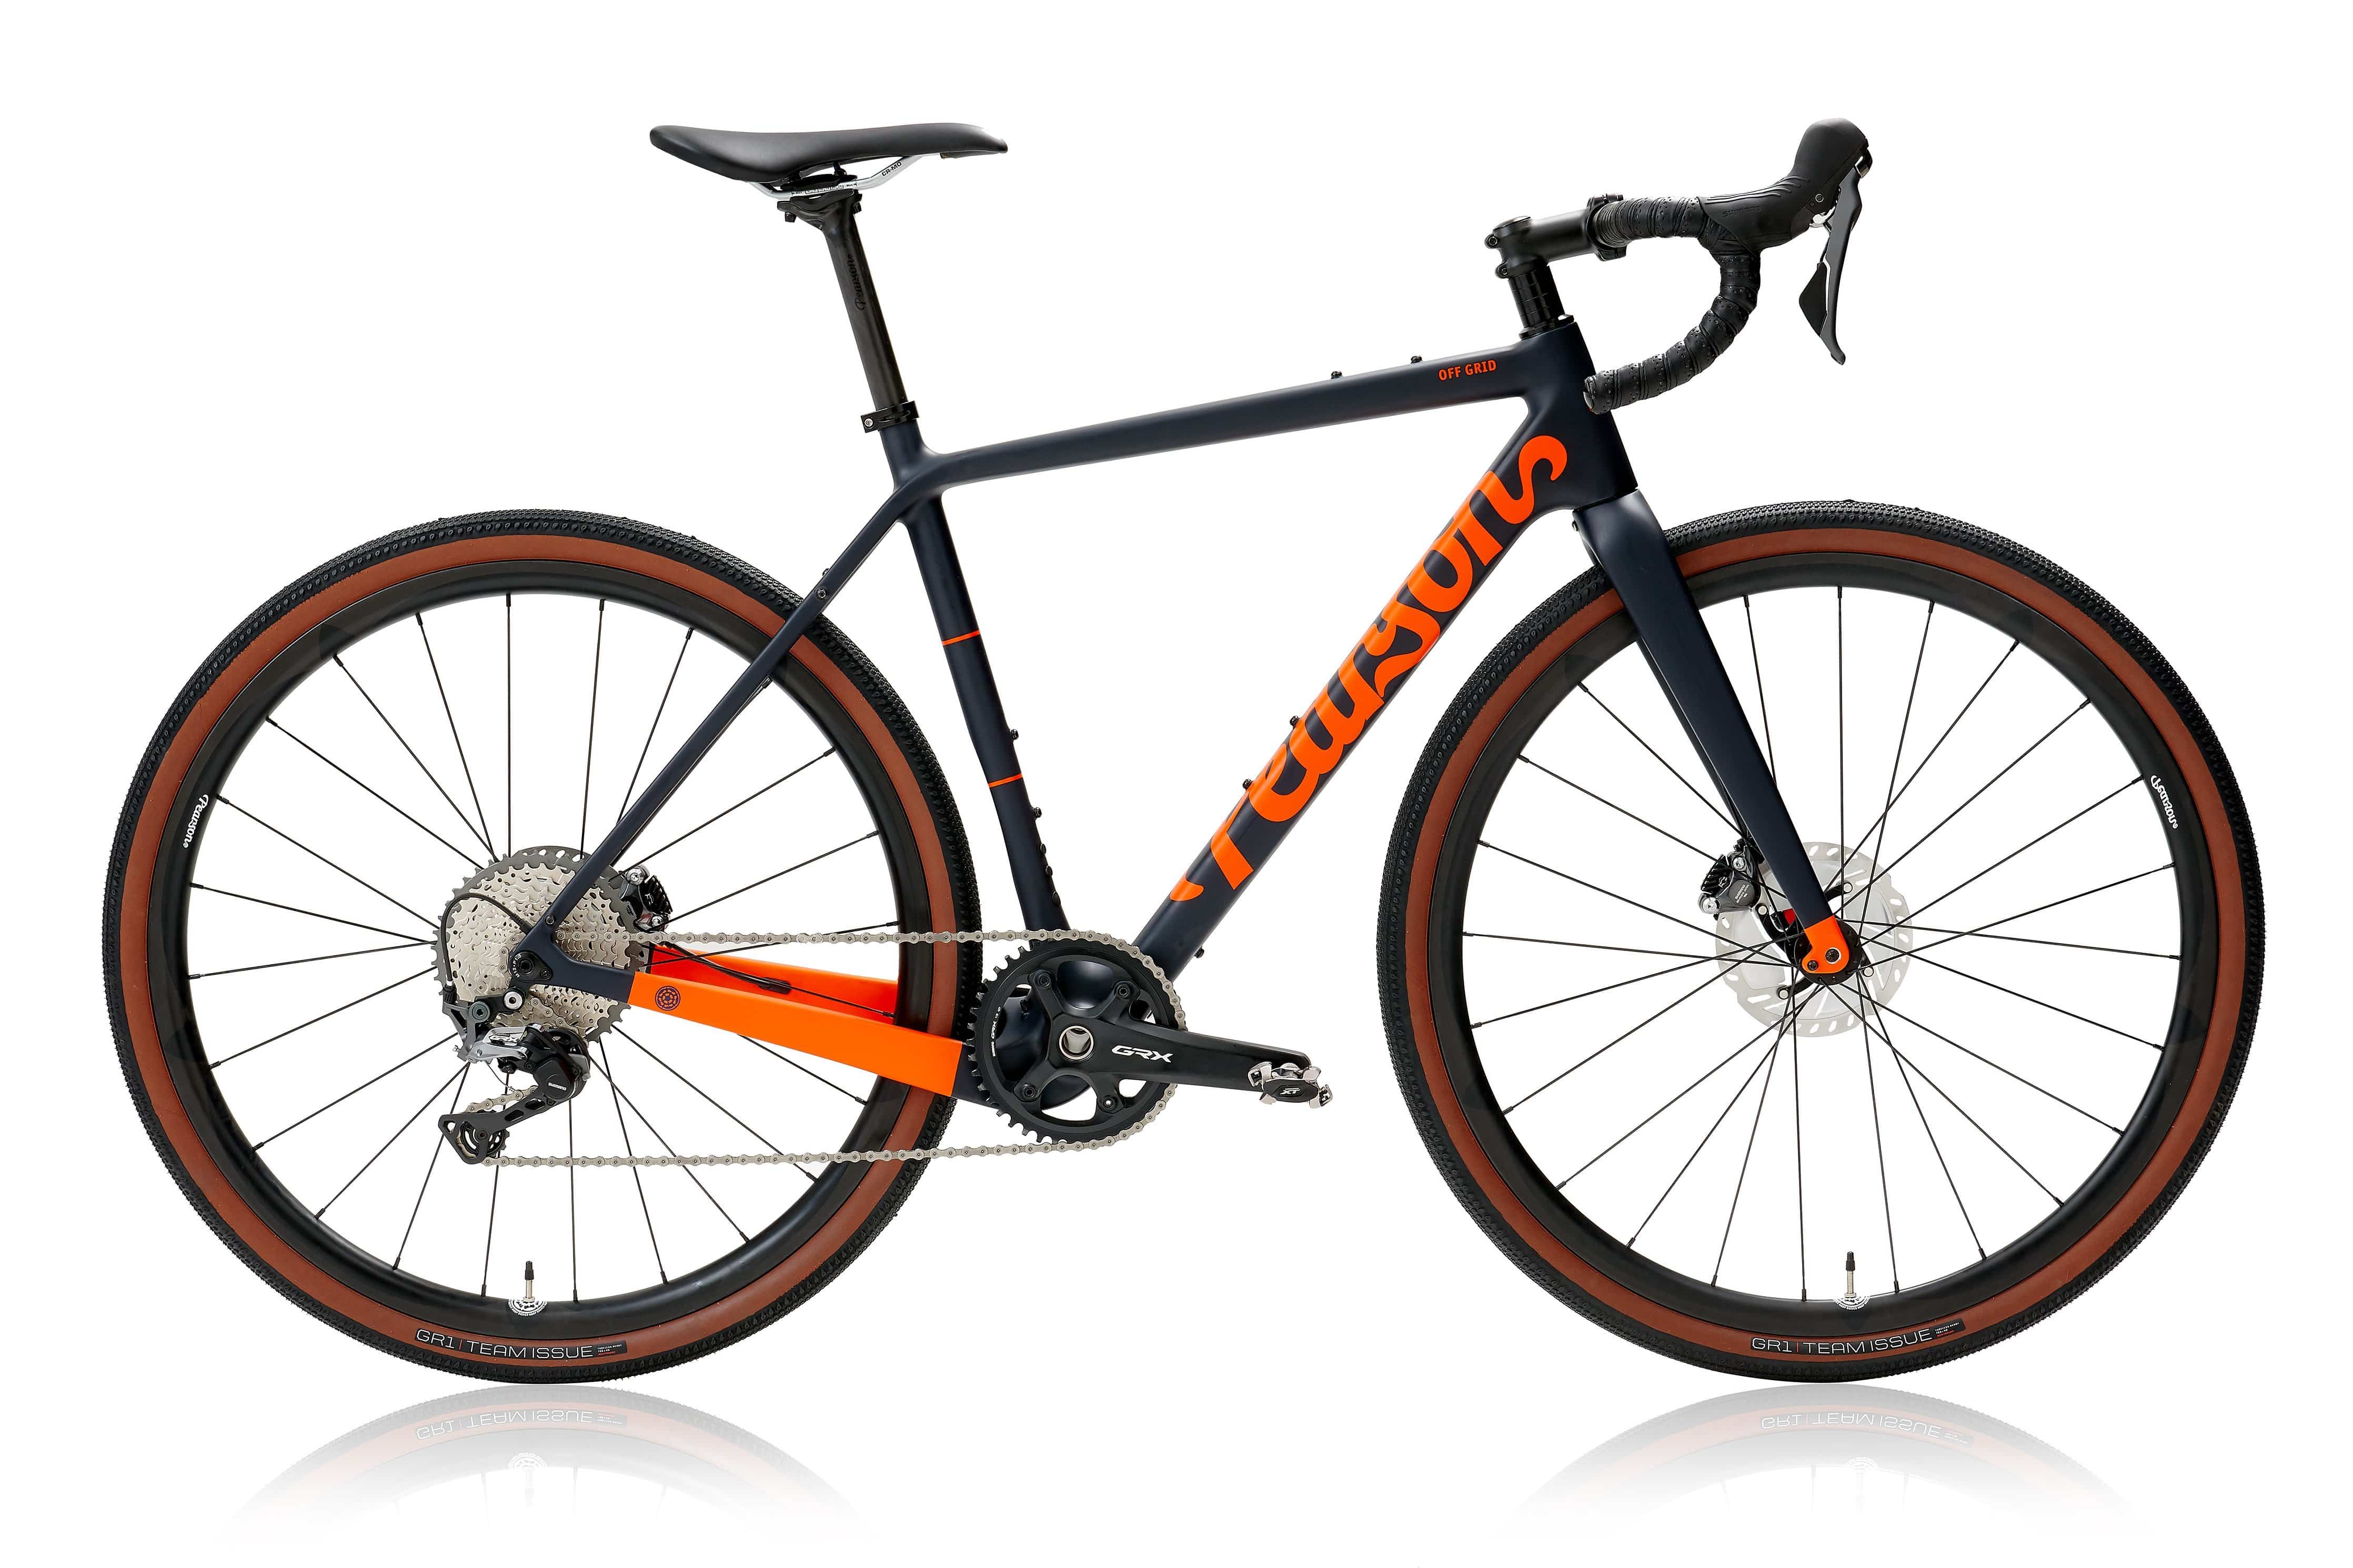 Pcs  Off Grid - Carbon Gravel Bike  Matt Orange On Matt Deep Blue / Medium / Grx 800 Mechanical - Hoopdriver Bump And Grind Carbon